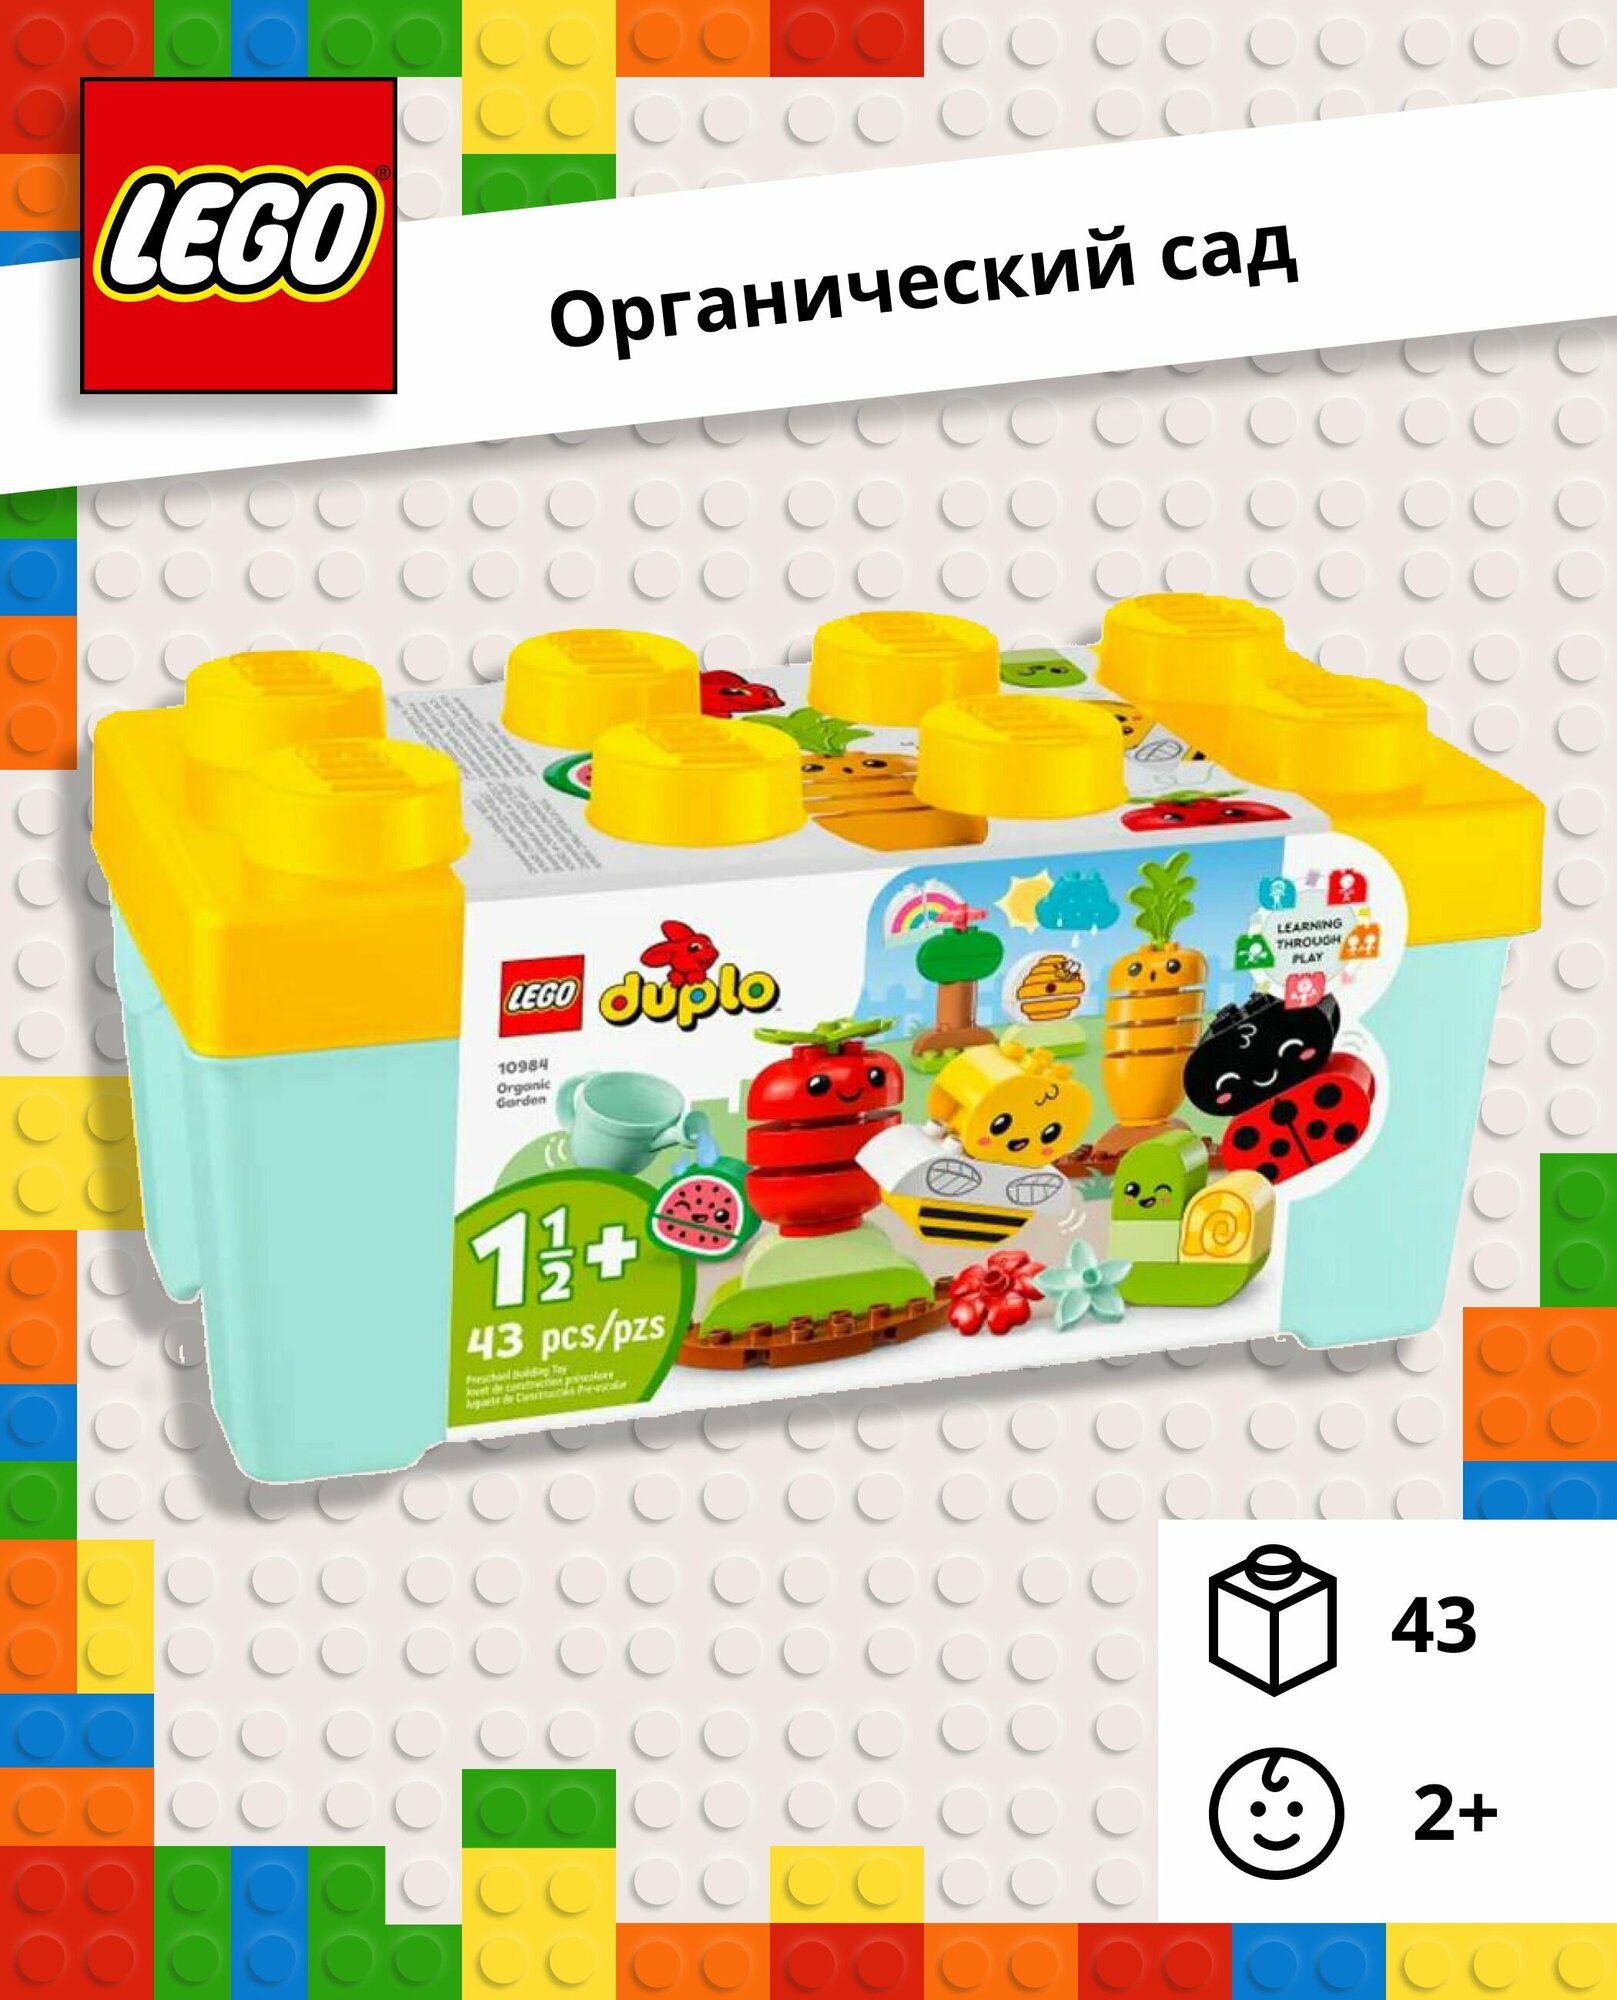 Конструктор LEGO DUPLO Органический сад